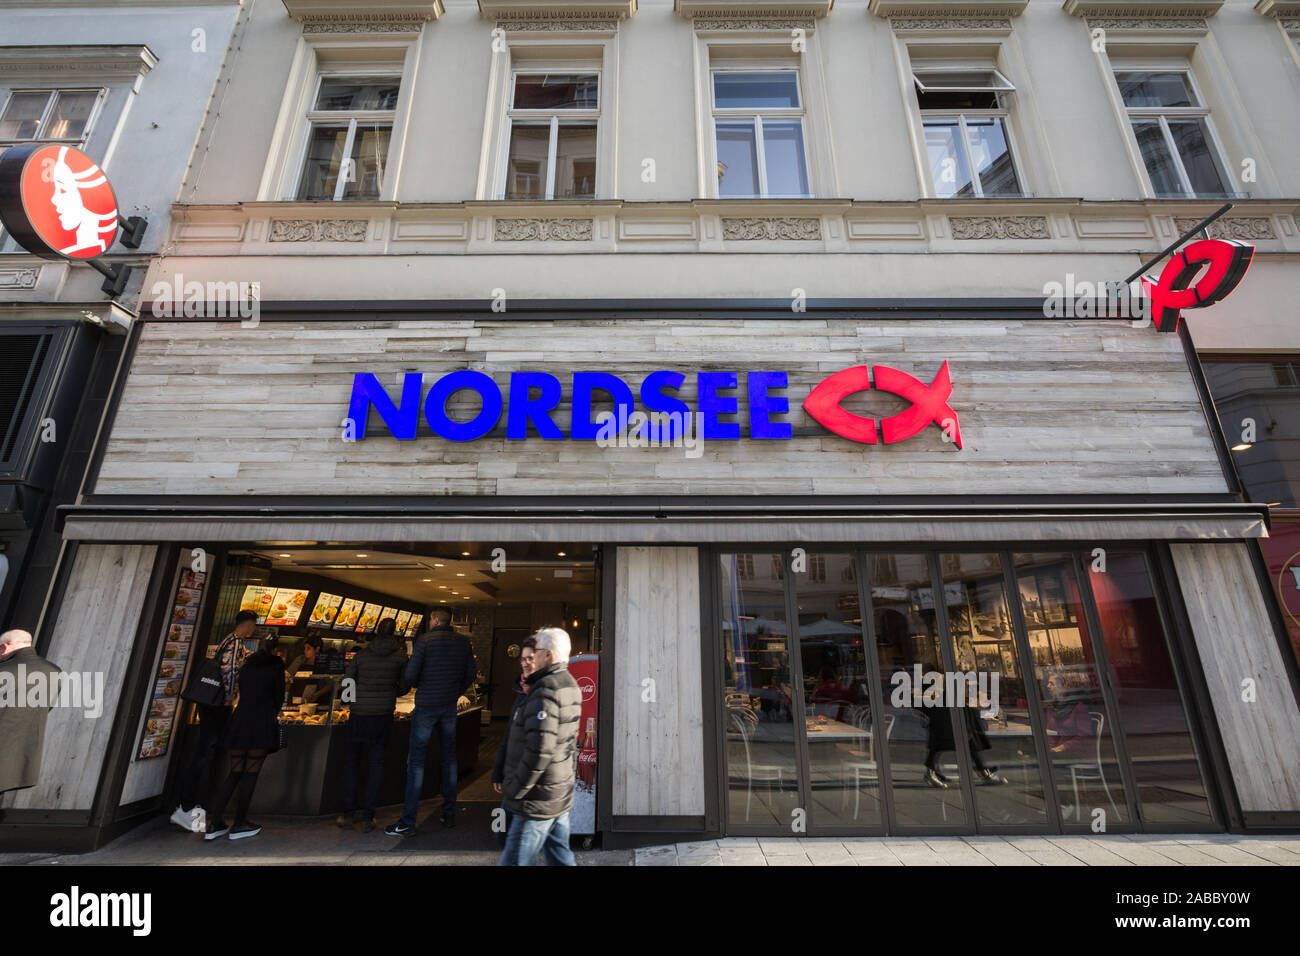 VIENNA, Austria - 6 Novembre 2019: Nordsee logo su uno dei loro ristoranti a Vienna. Nordsee è una catena tedesca di fast food ristoranti specializzati Foto Stock